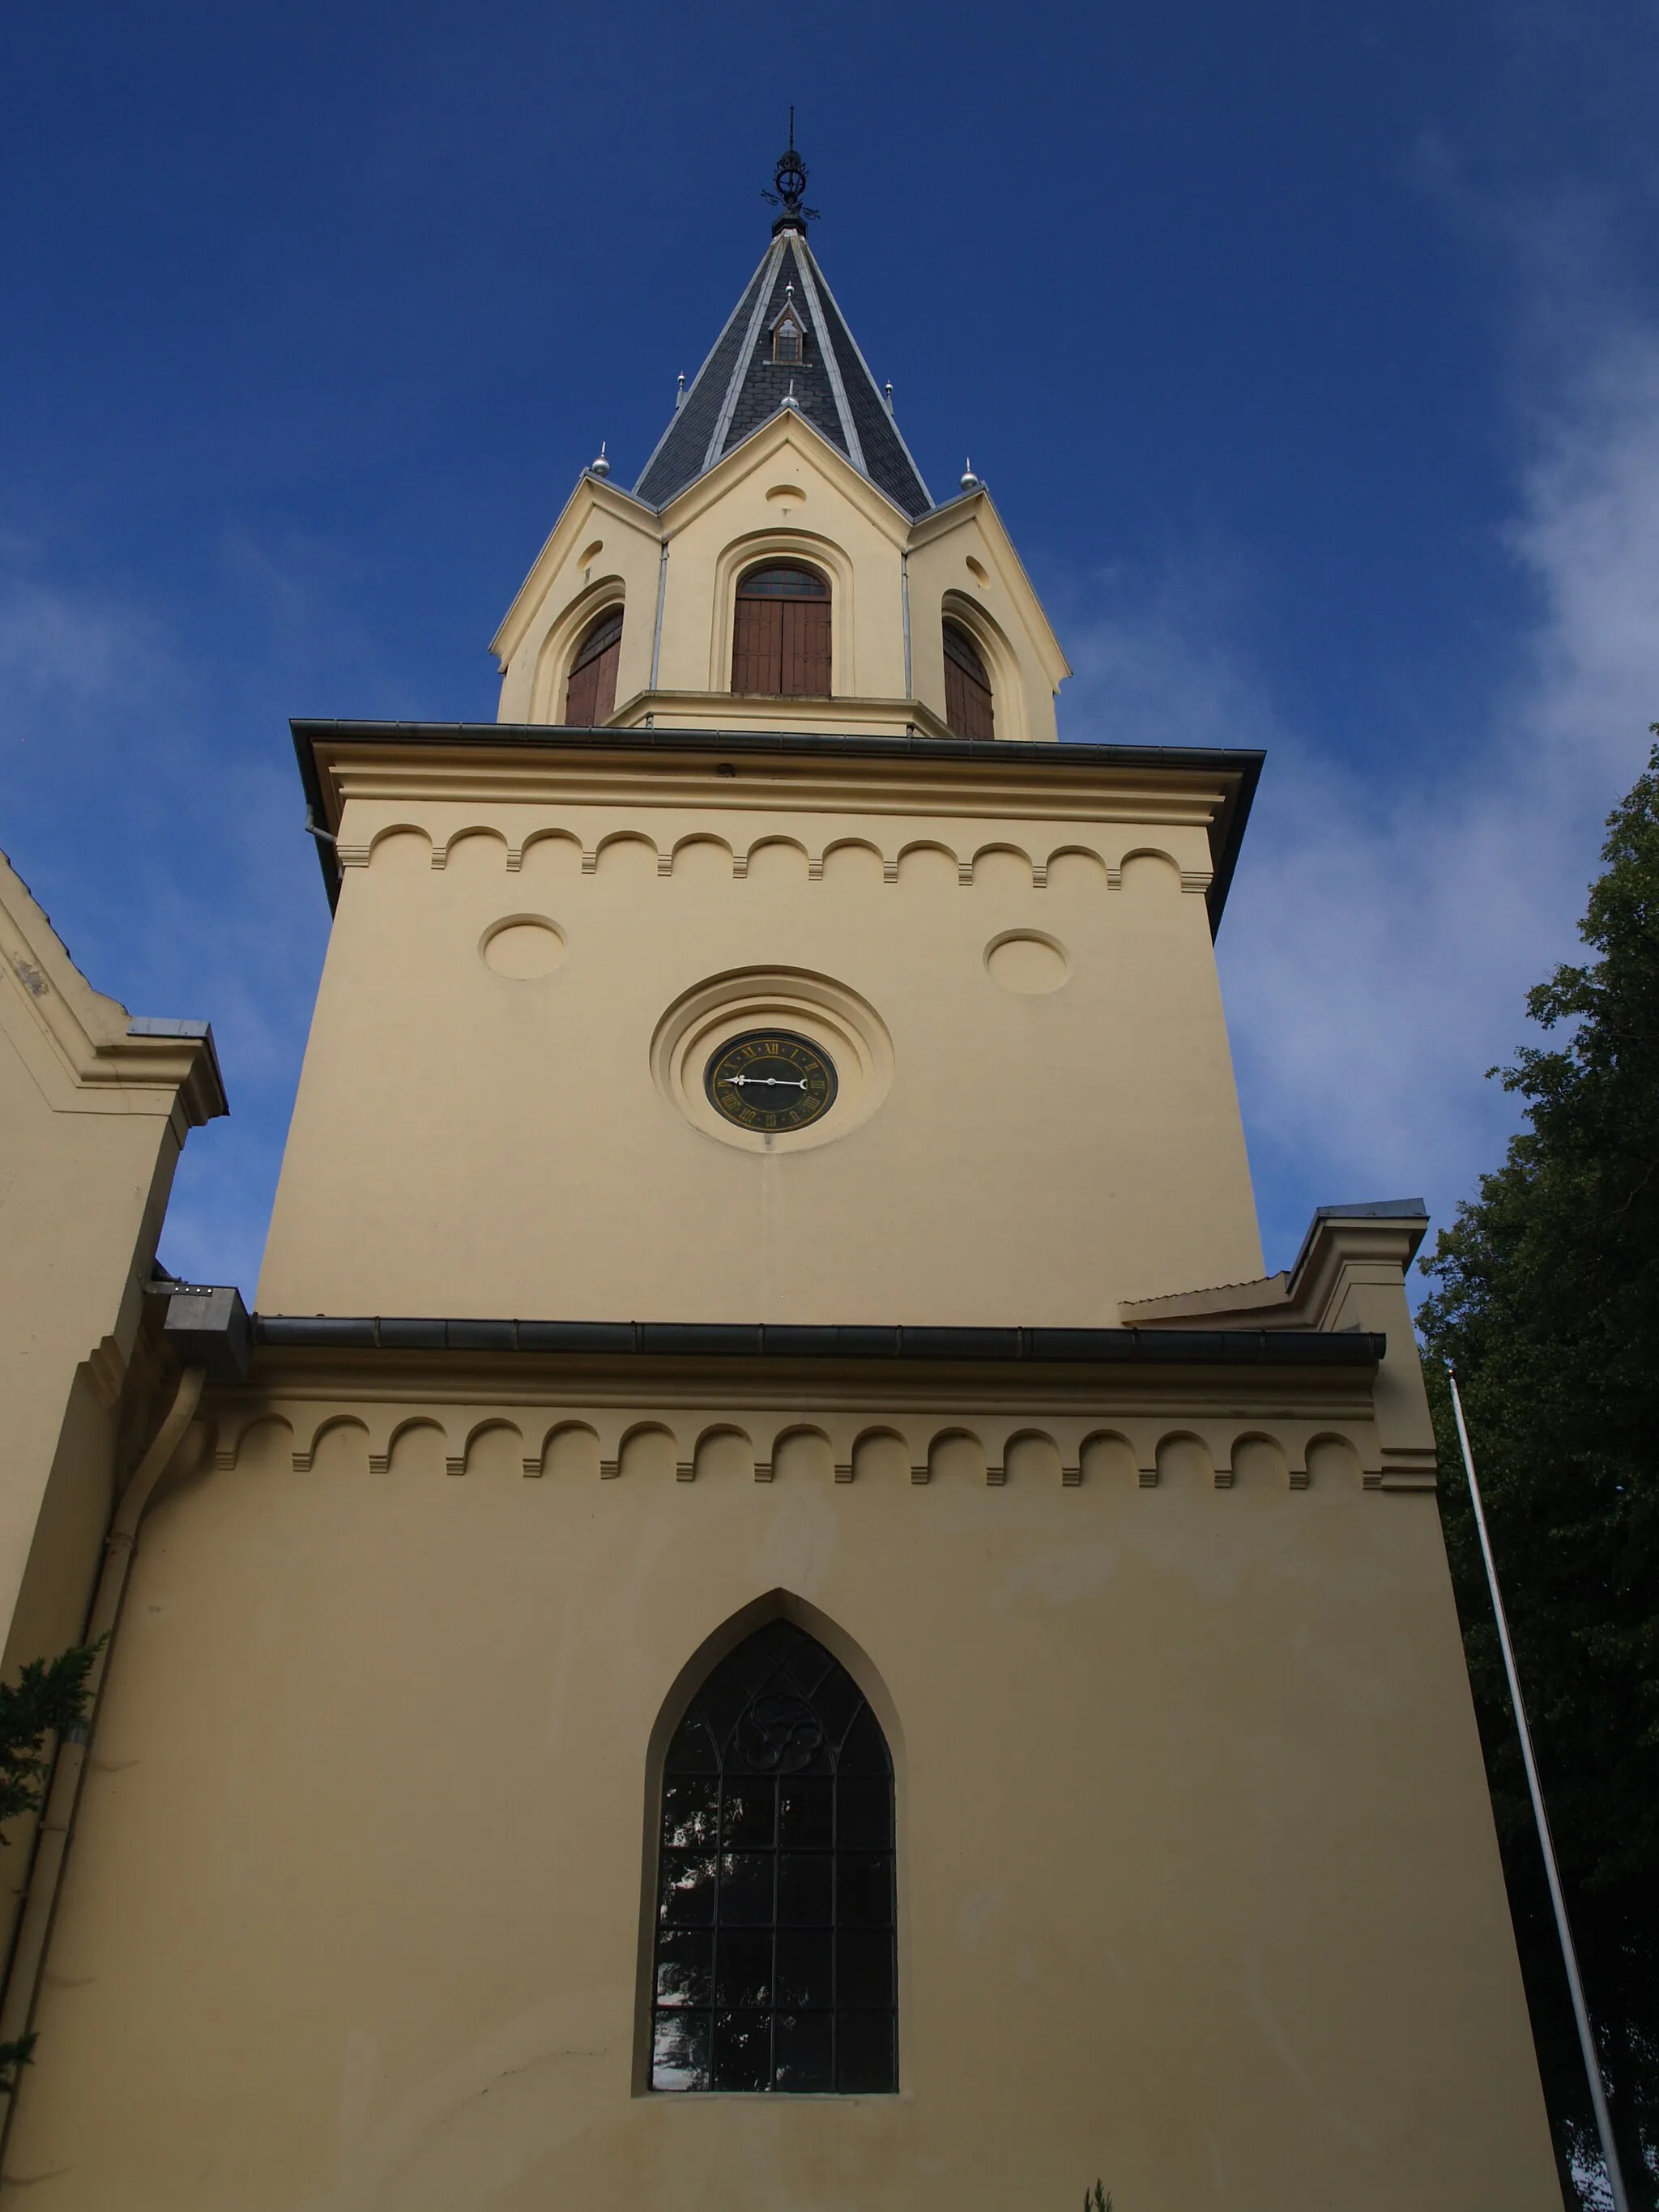 Photo showing: The church in Tranekær on Langeland island, Denmark